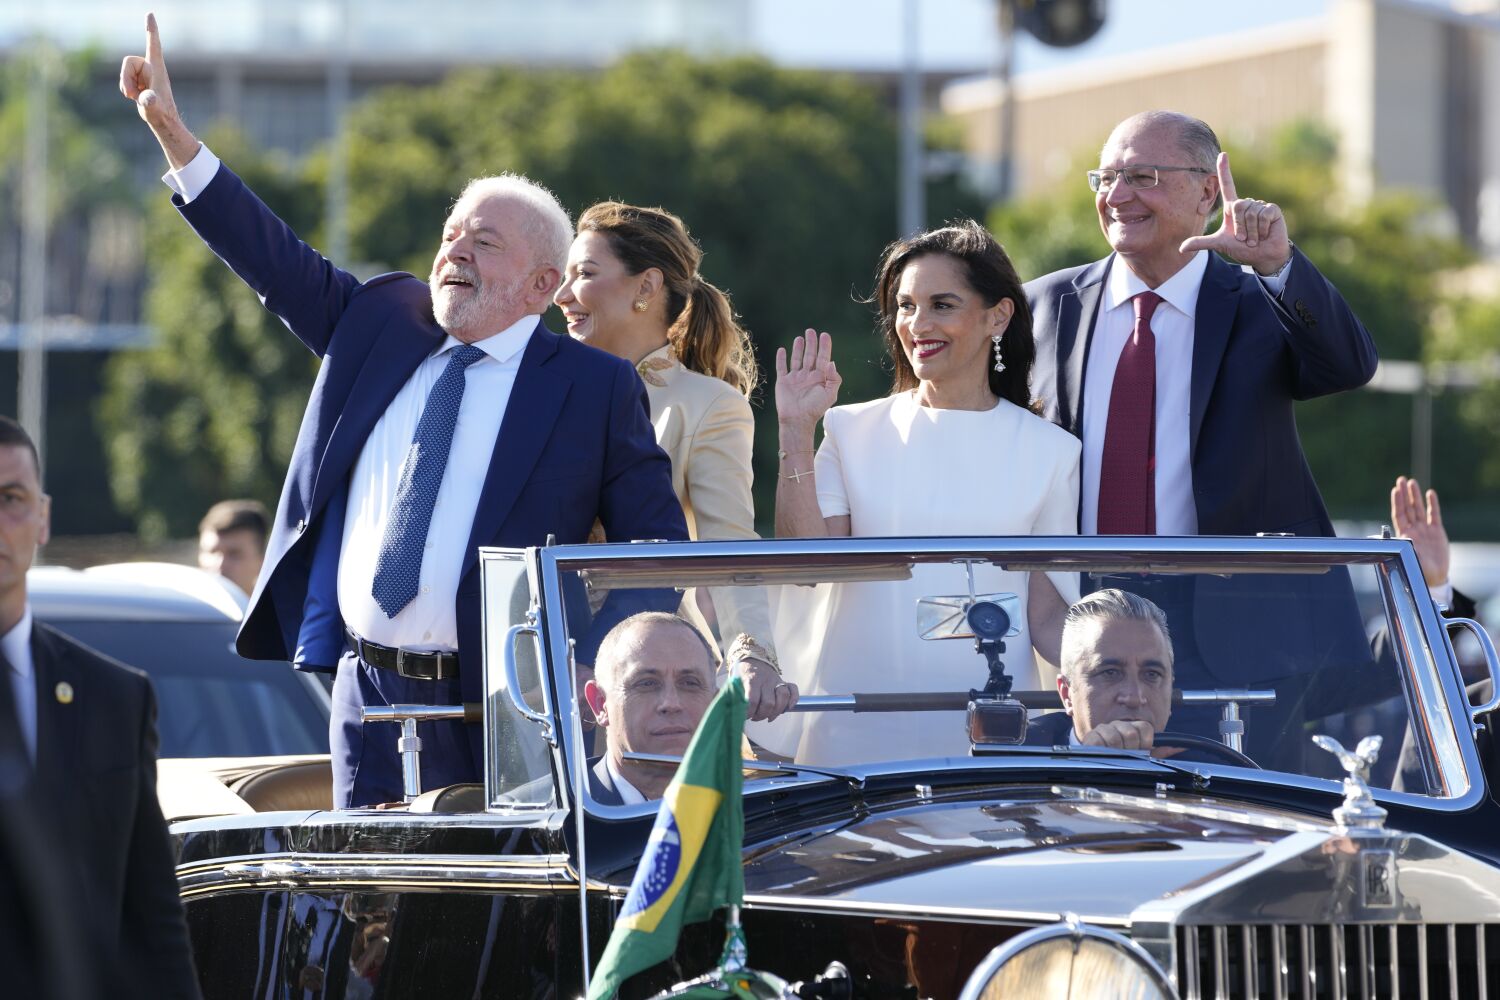 Biden, Brezilyalı Lula'yı Beyaz Saray'da karşılayacak